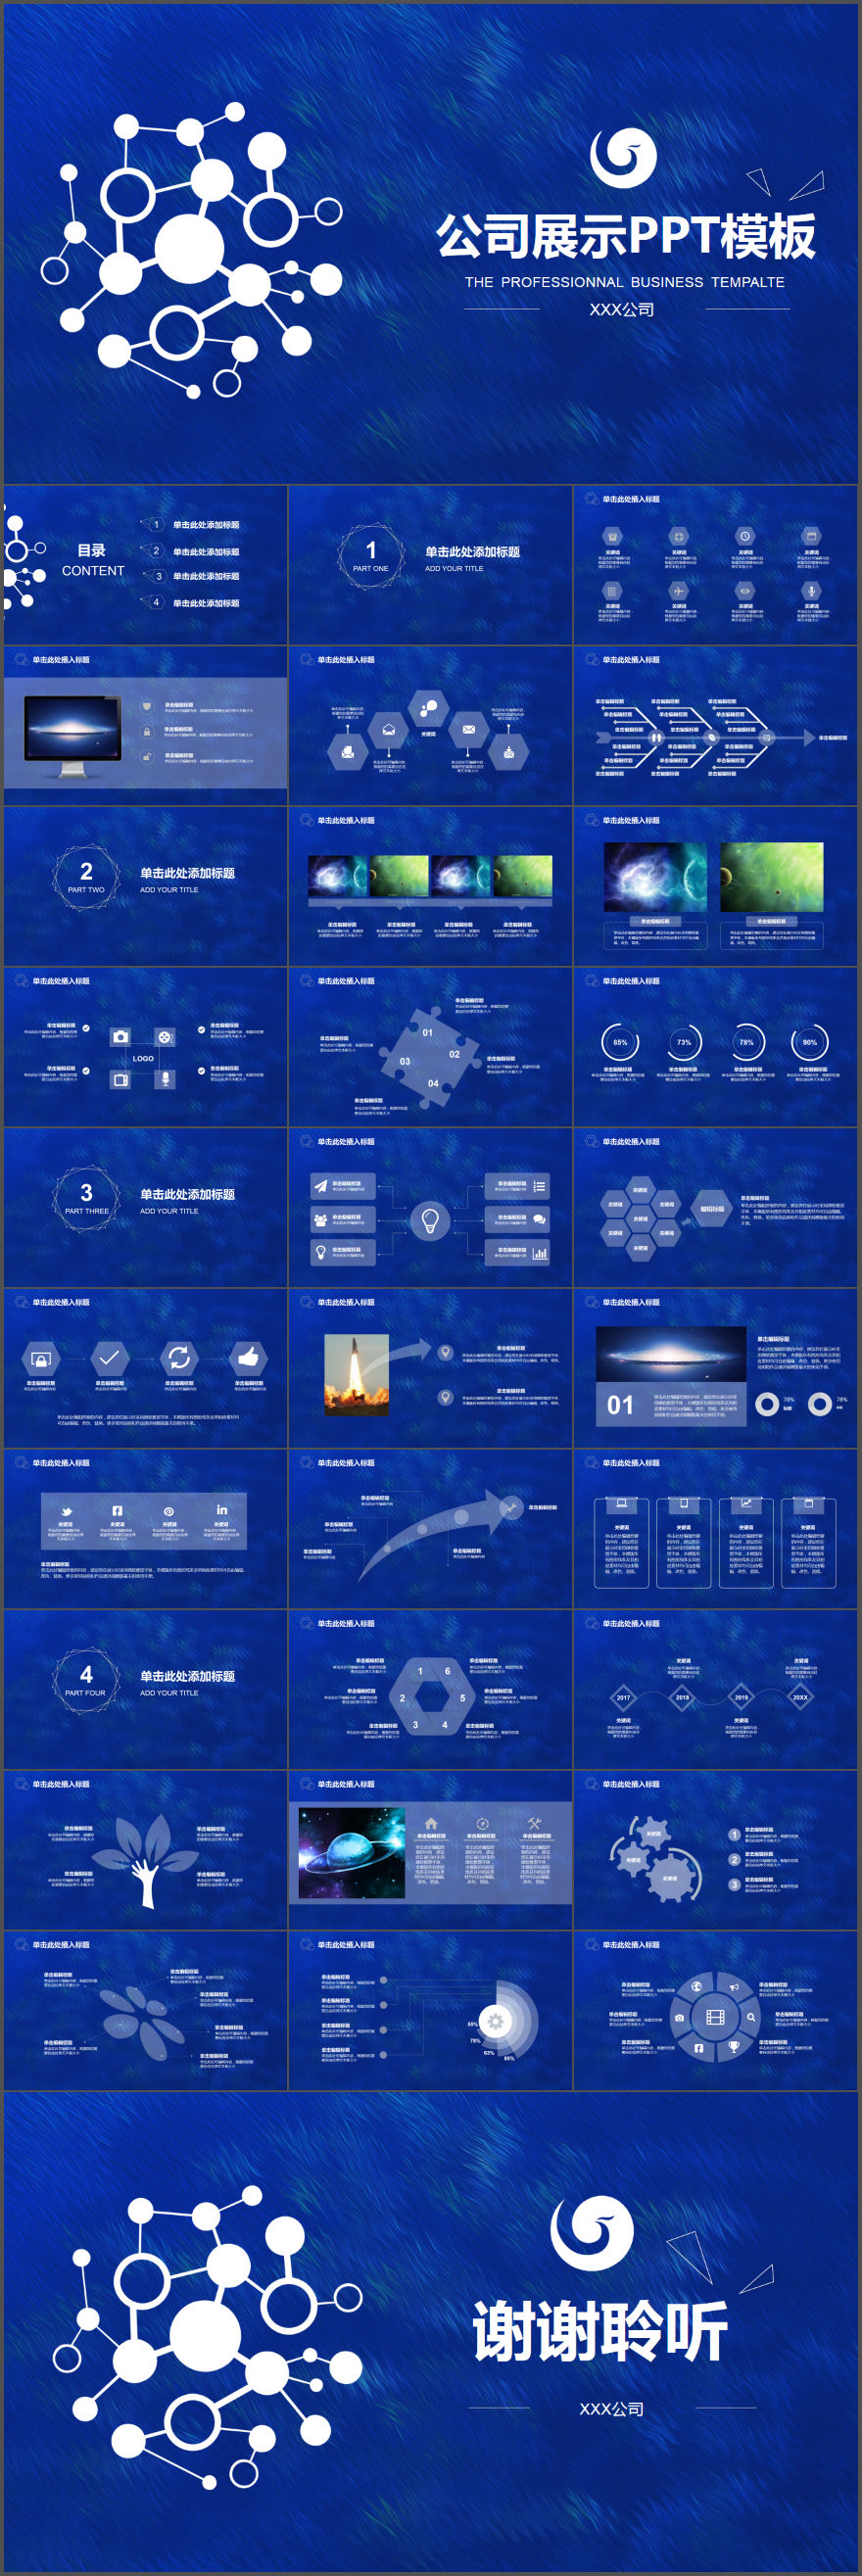 蓝色梦幻ios风格公司展示商务通用PPT模板